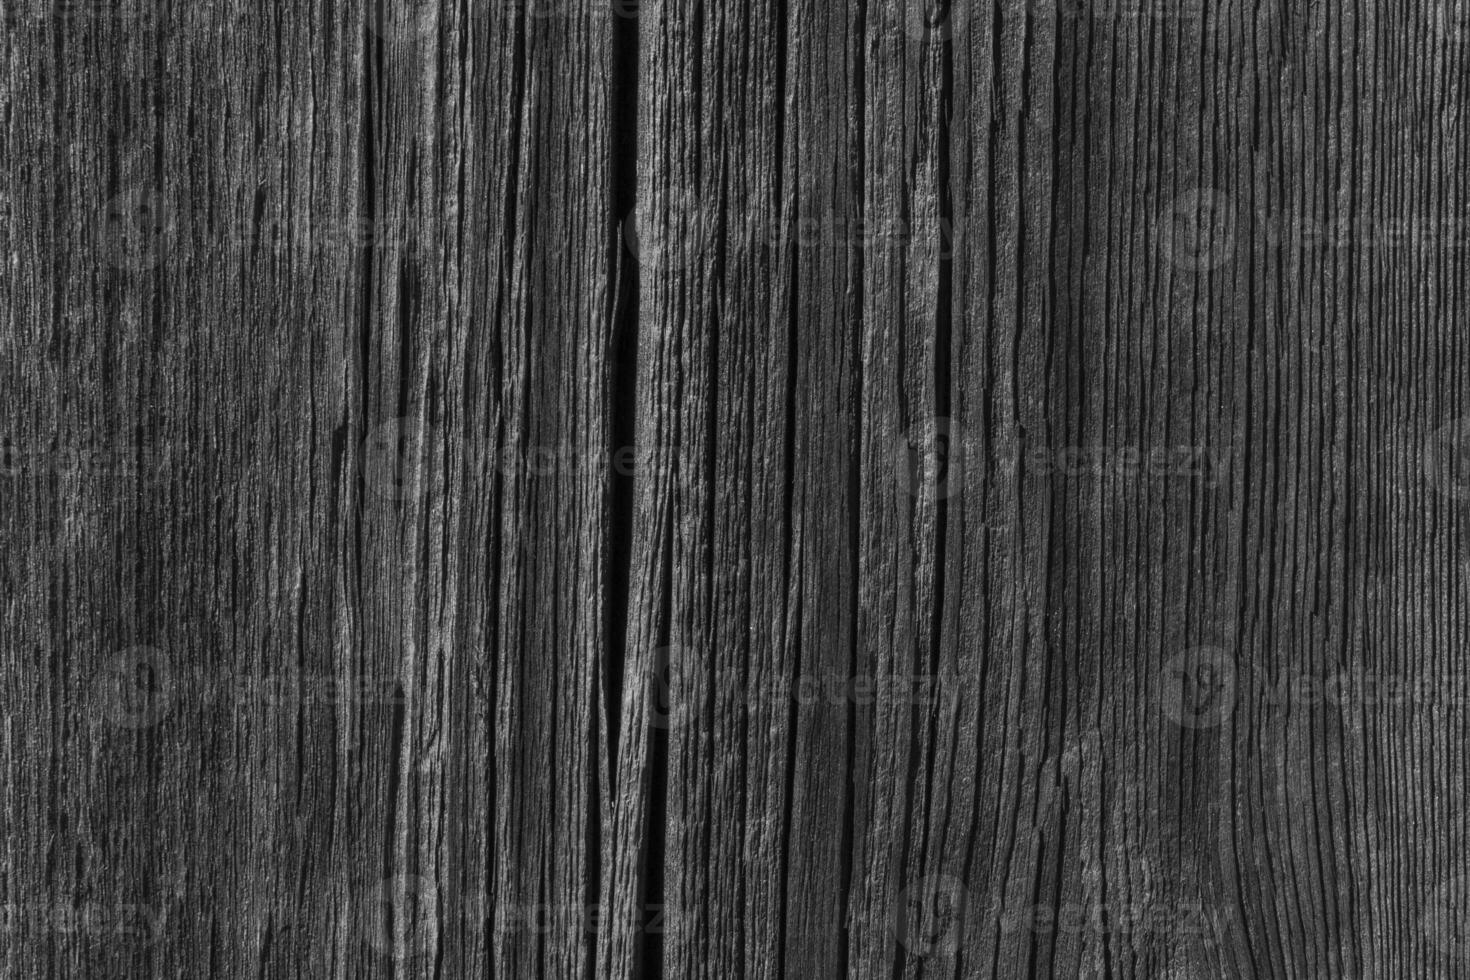 Preto e branco foto do velho de madeira borda